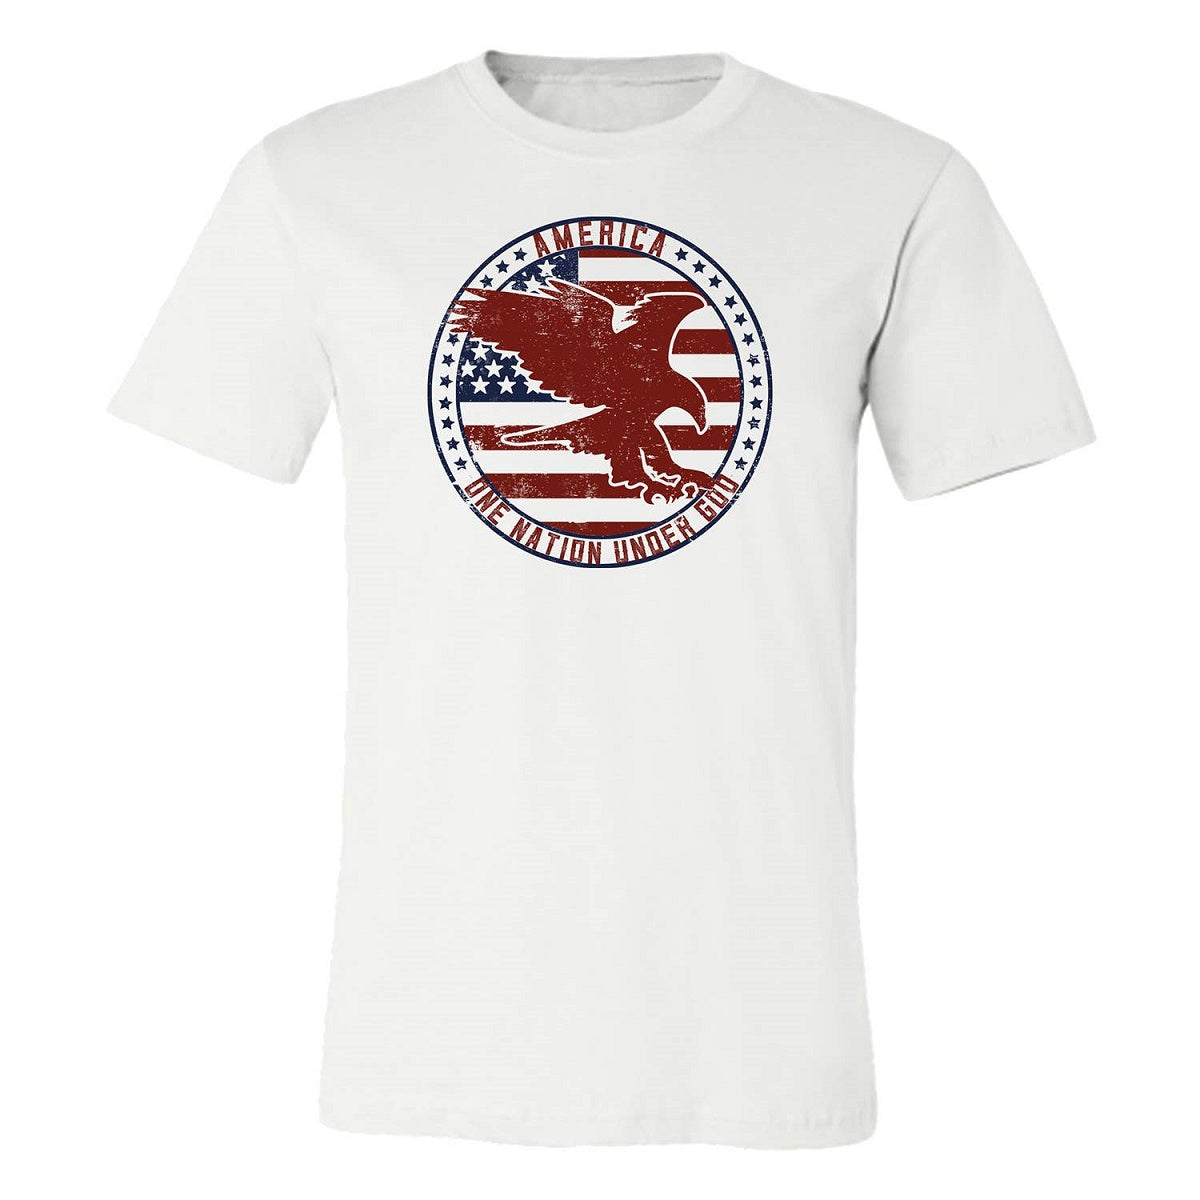 White "One Nation Under God" Short Sleeve Eagle Stamp T-Shirt, Large